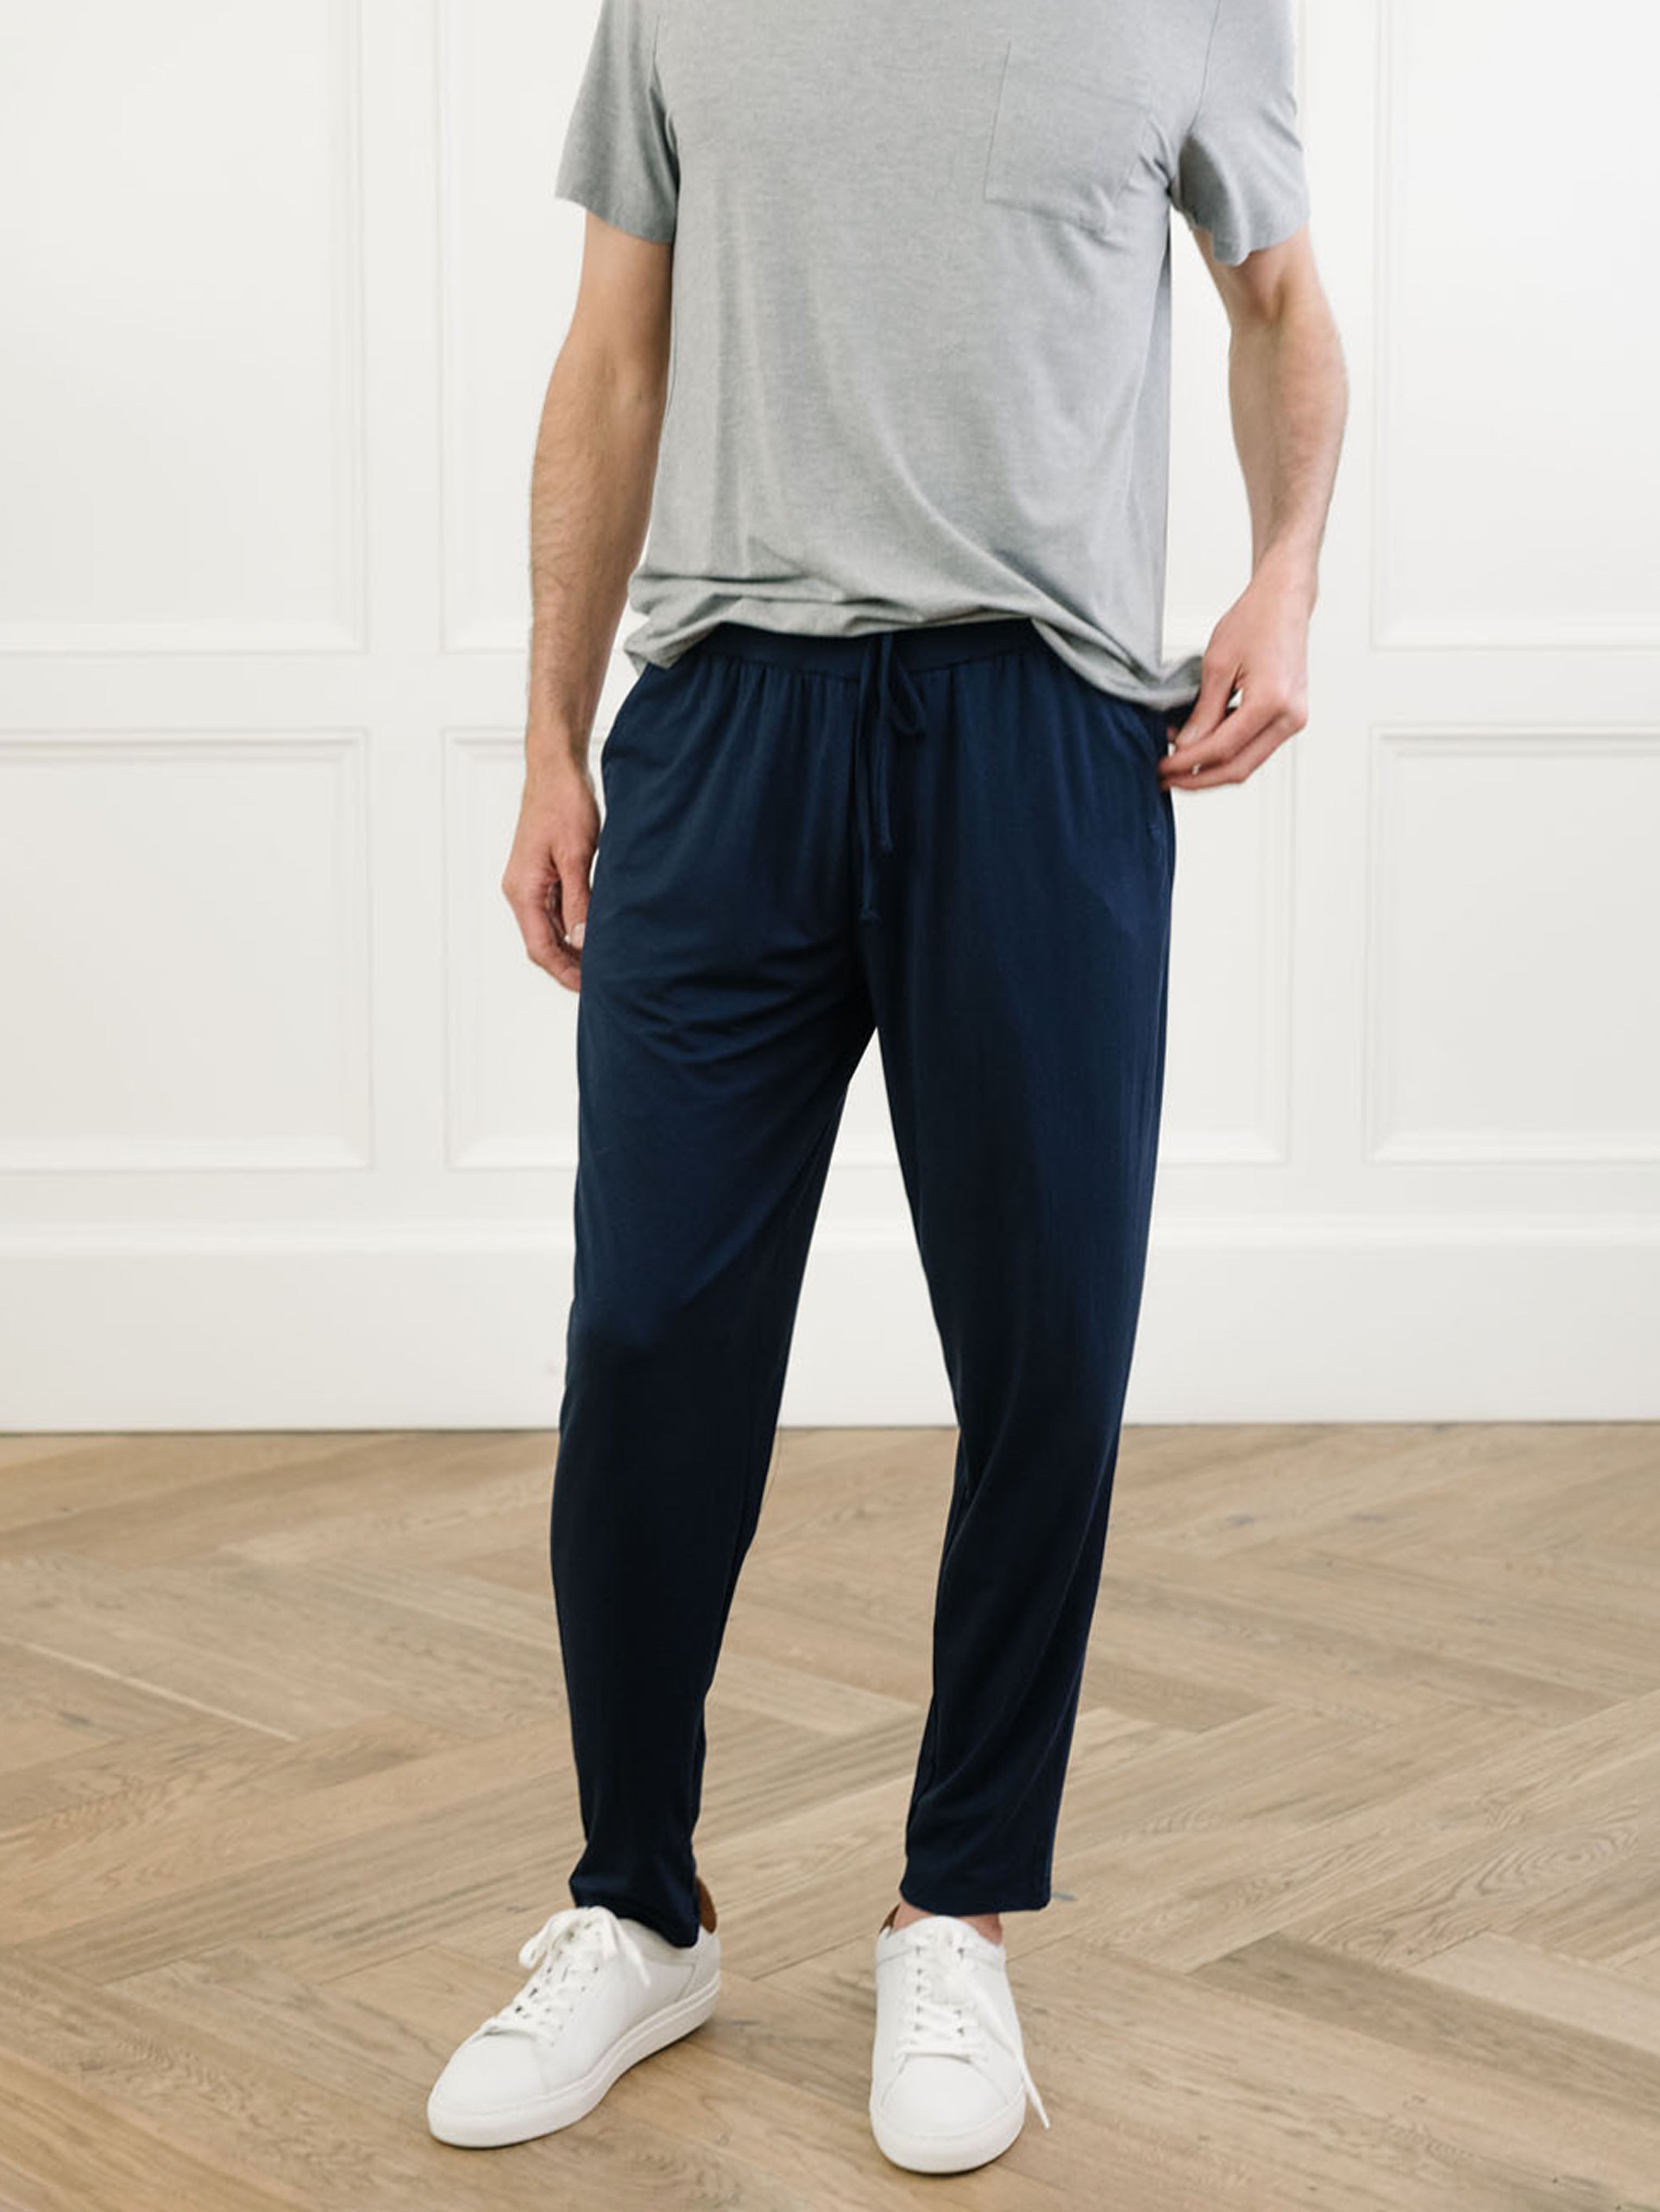 Men's Knit Jogger Pajama Pants - Goodfellow & Co™ : Target